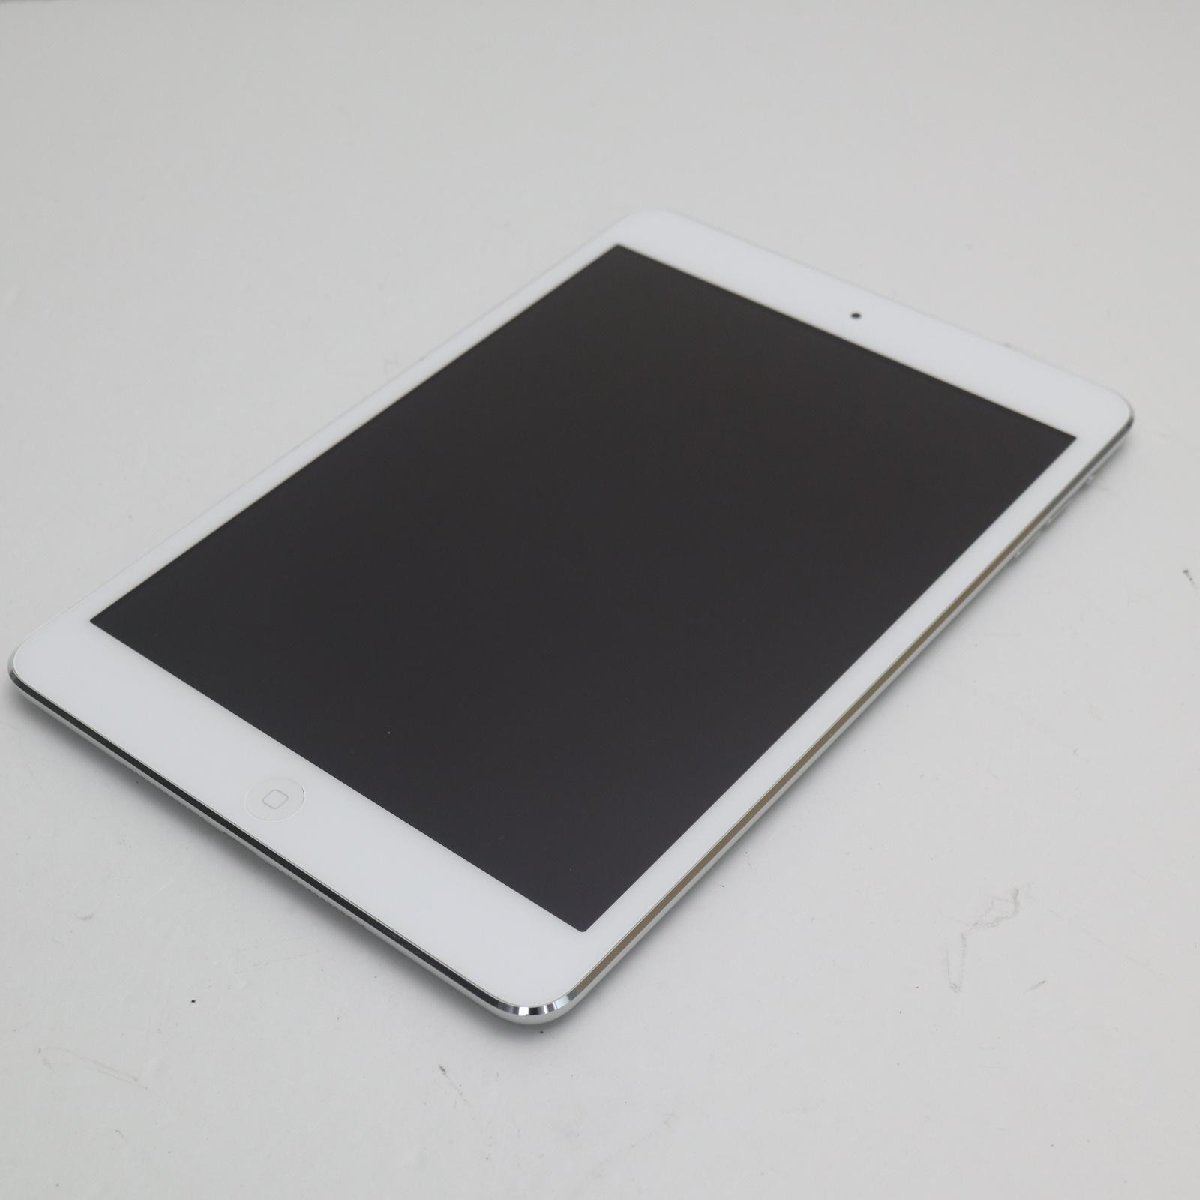 新品同様iPad7 第7世代wi-fiモデル32GB シルバー本体中古あすつく土日 